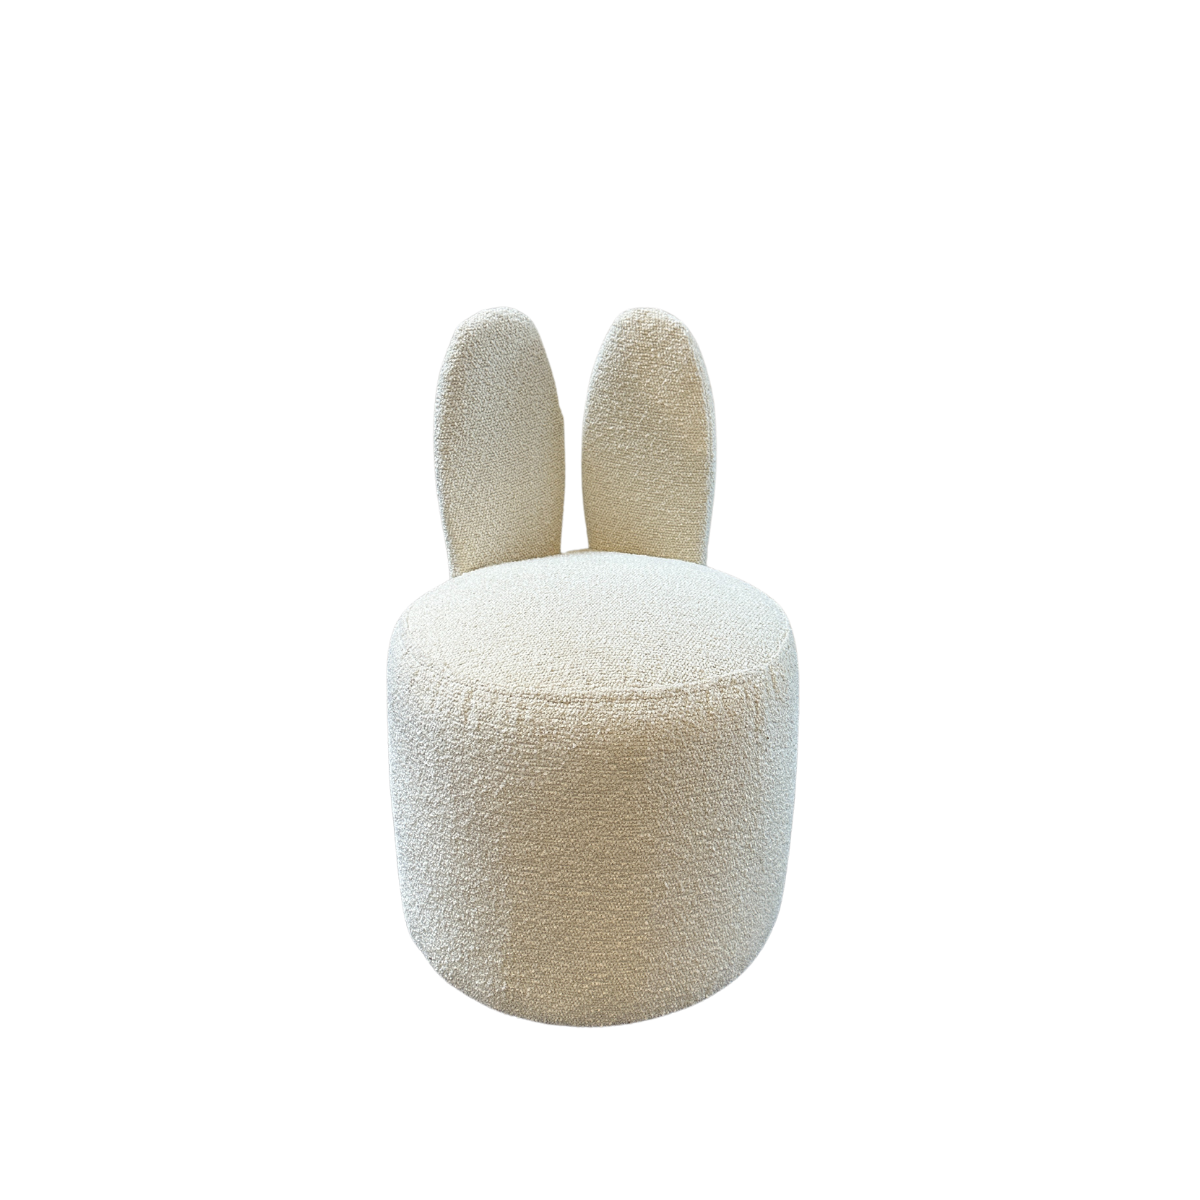 Lymoné | Bunny chair